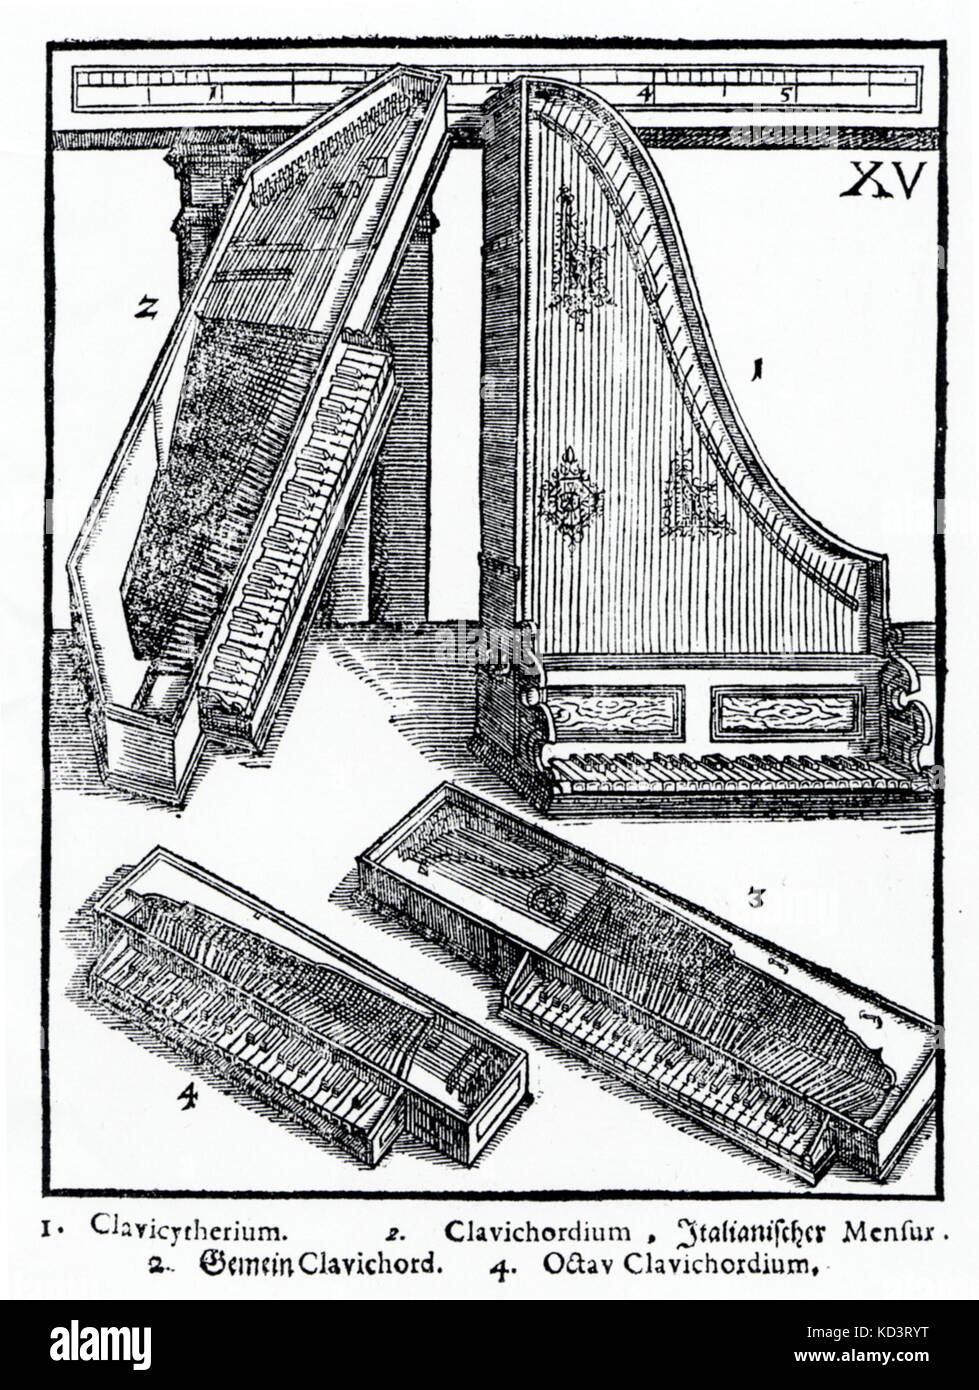 Piastra XV da Praetorius "yntagma Musicum", 1619. 1. Clavicytherium 2. In stile italiano di clavicordo 3. Clavicordo comune 4. Ottava clavicordo Foto Stock